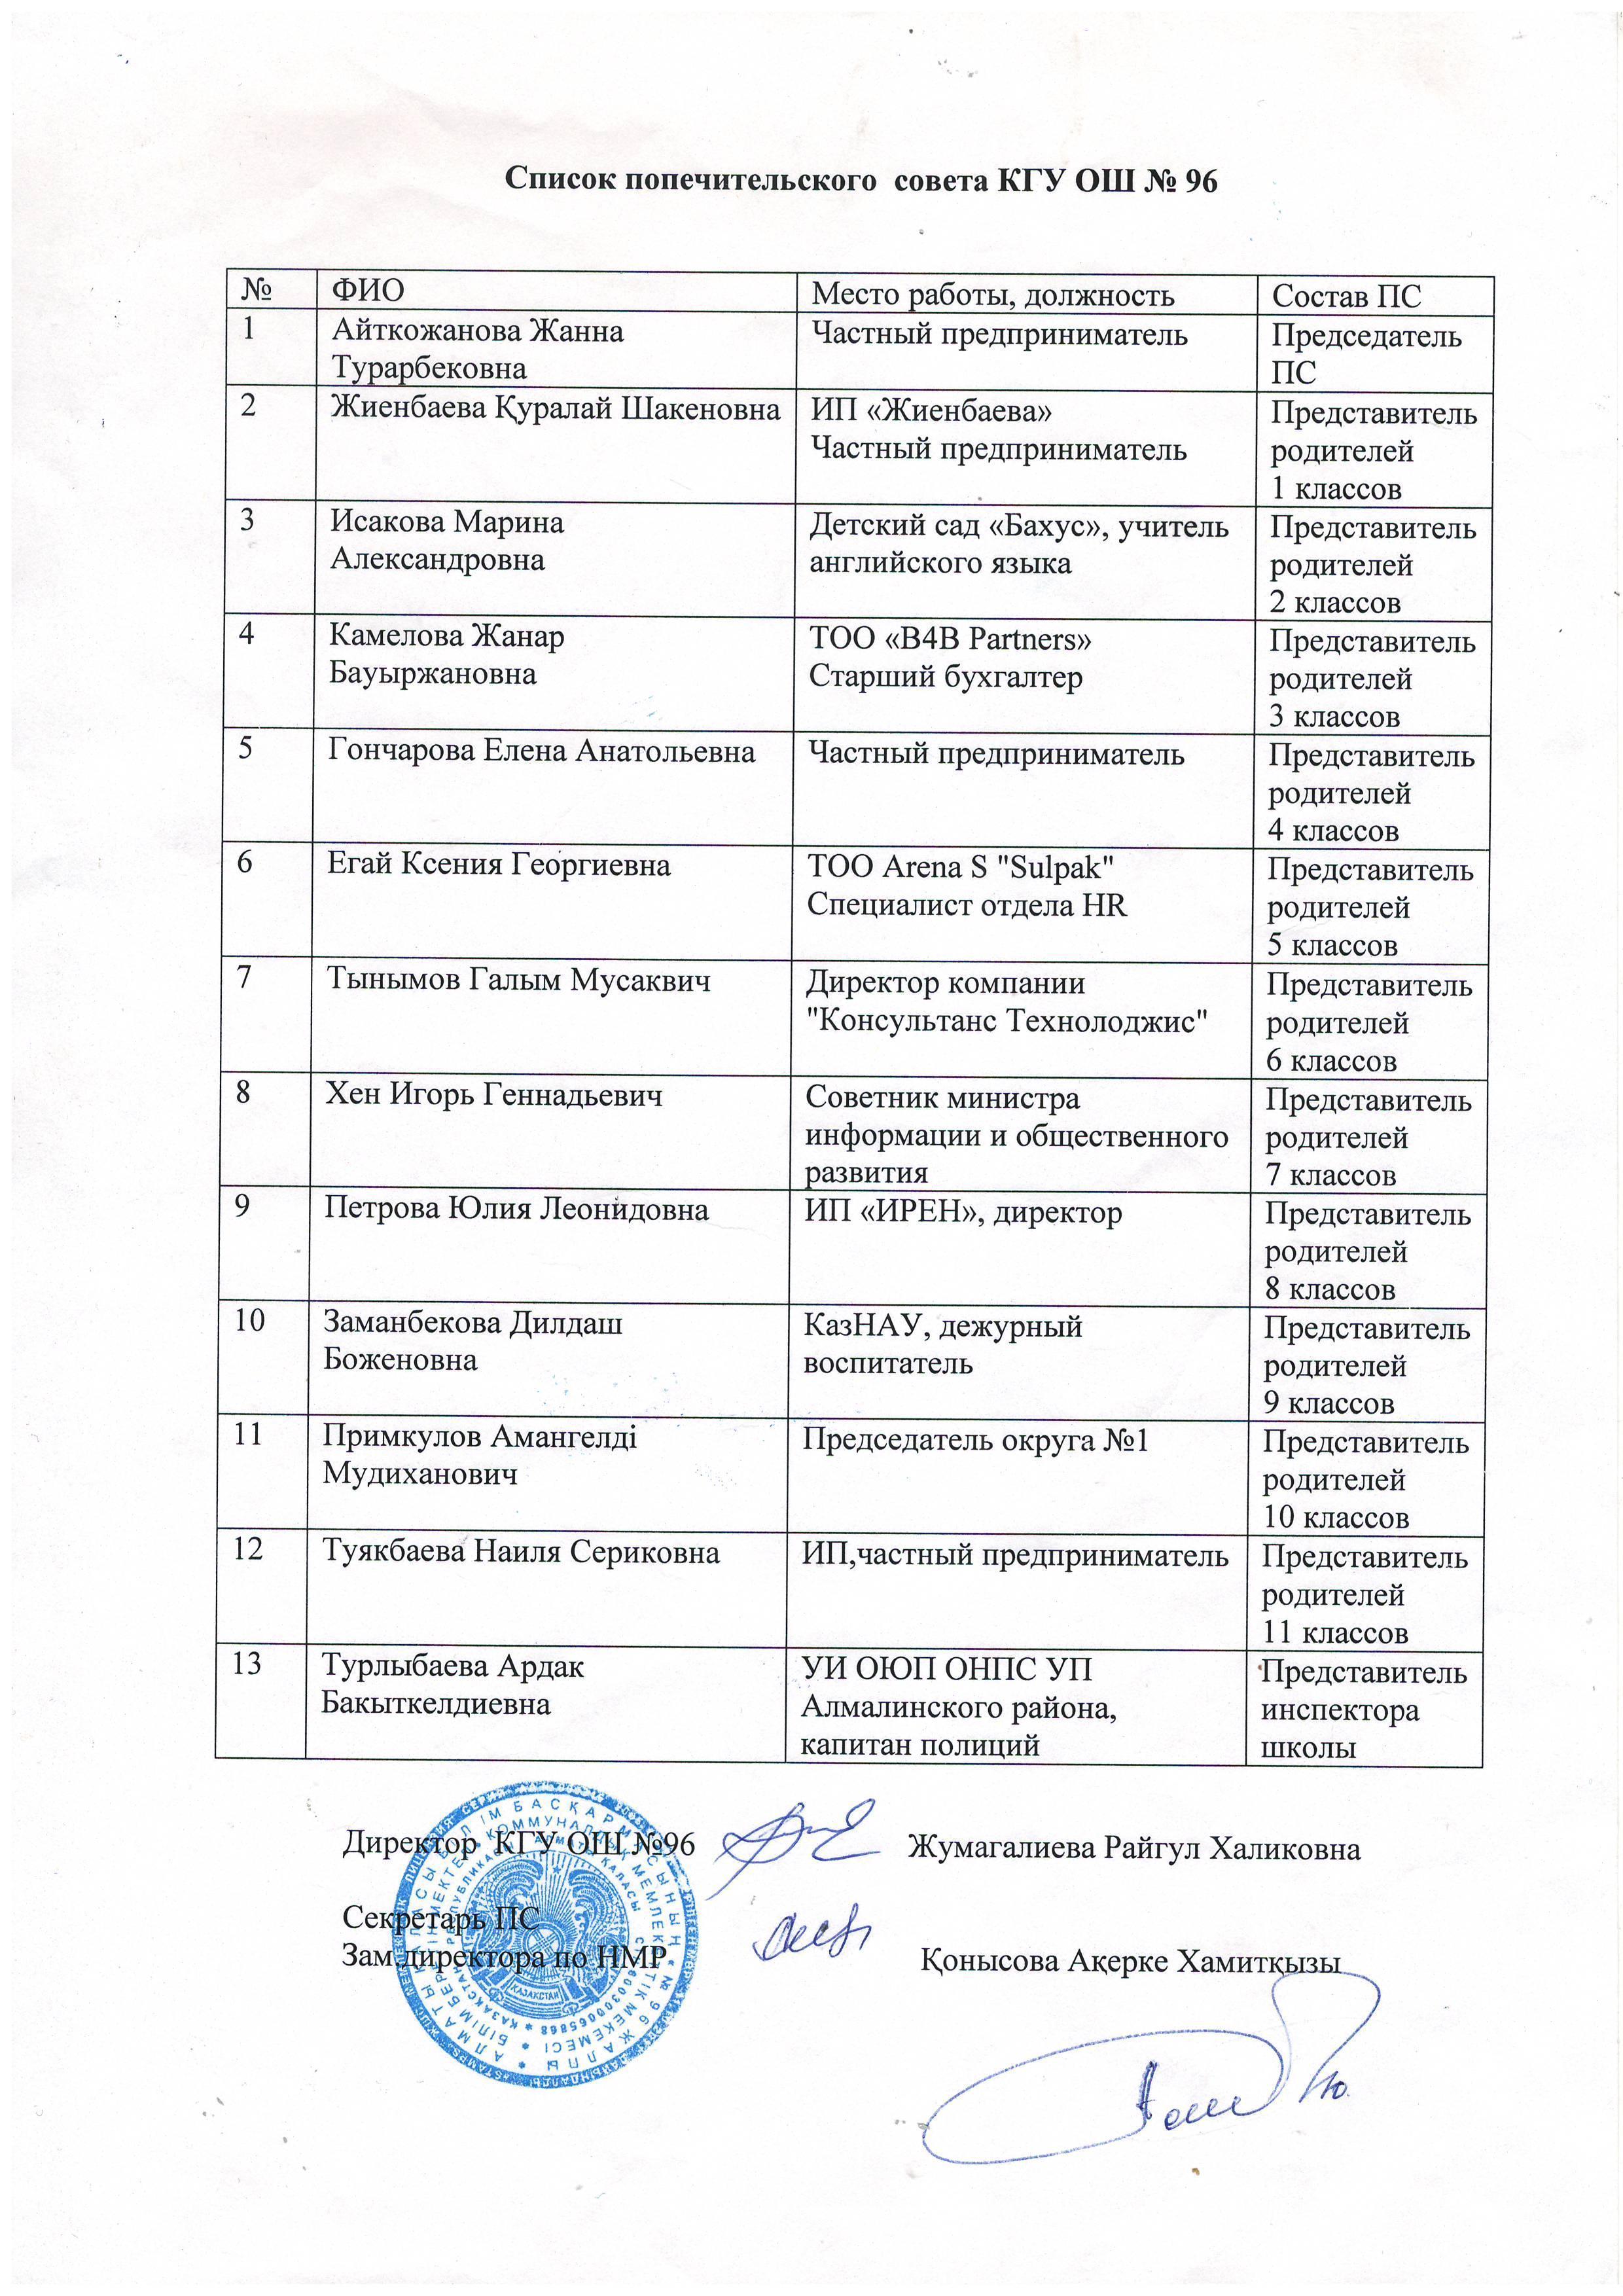 Список Попечительского совета КГУ ОШ №96